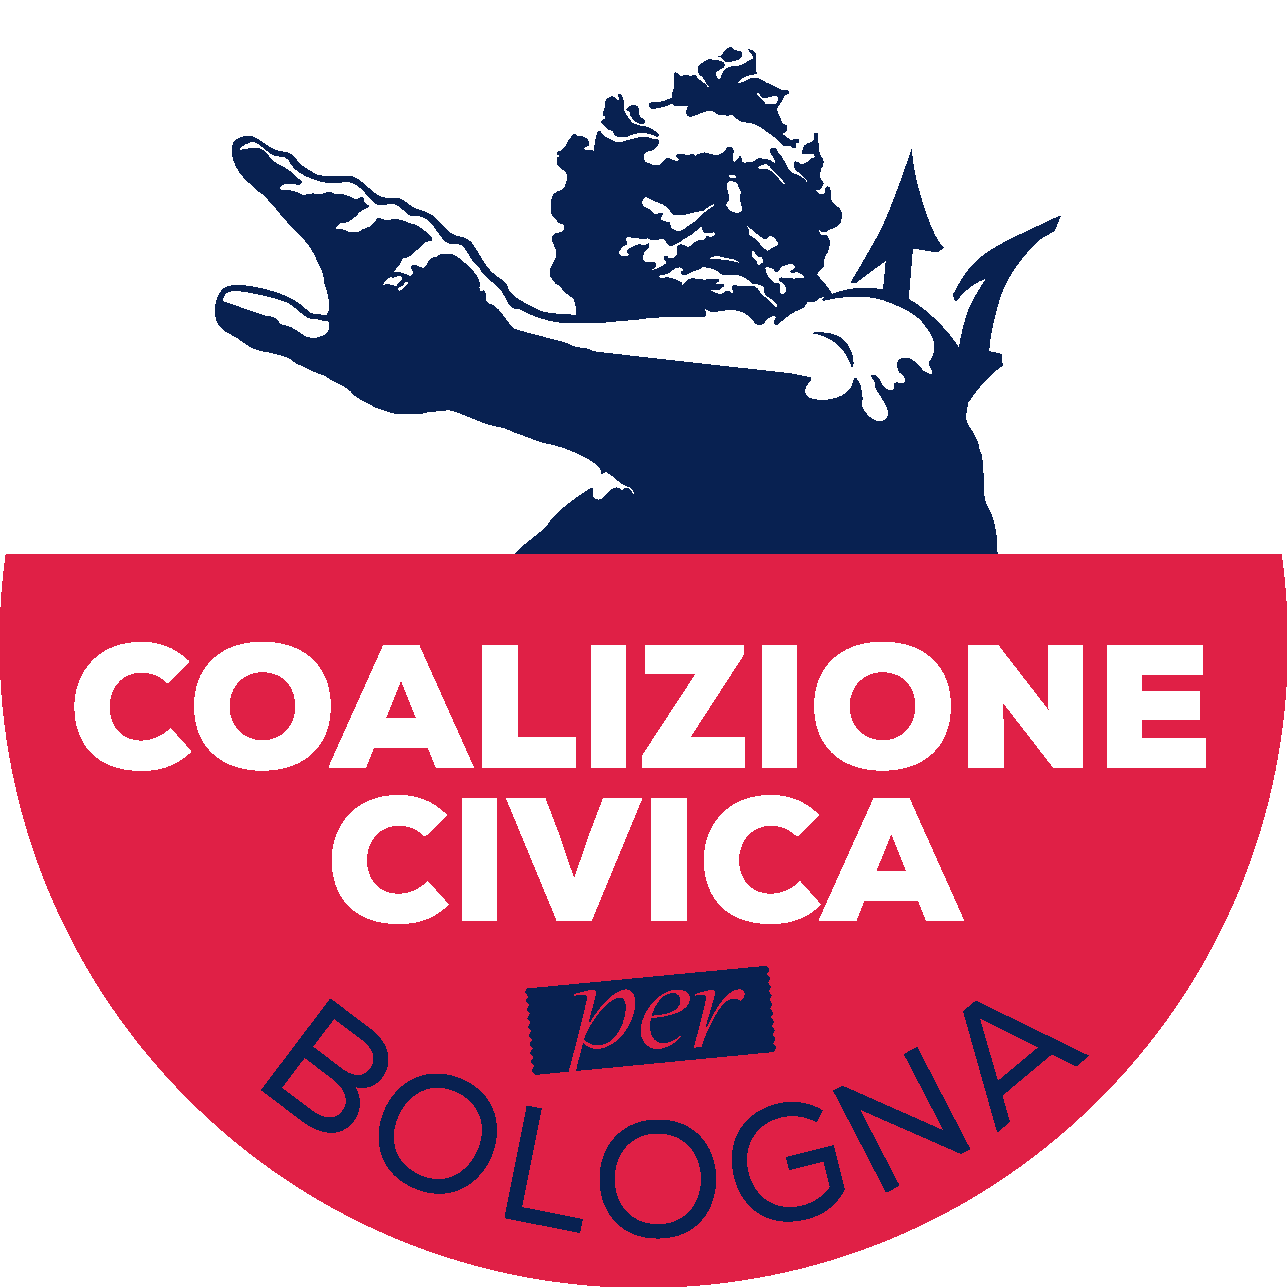 L’ULTIMO MESE DI COALIZIONE CIVICA –  Tutte le nostre azioni verso la Bologna che vogliamo